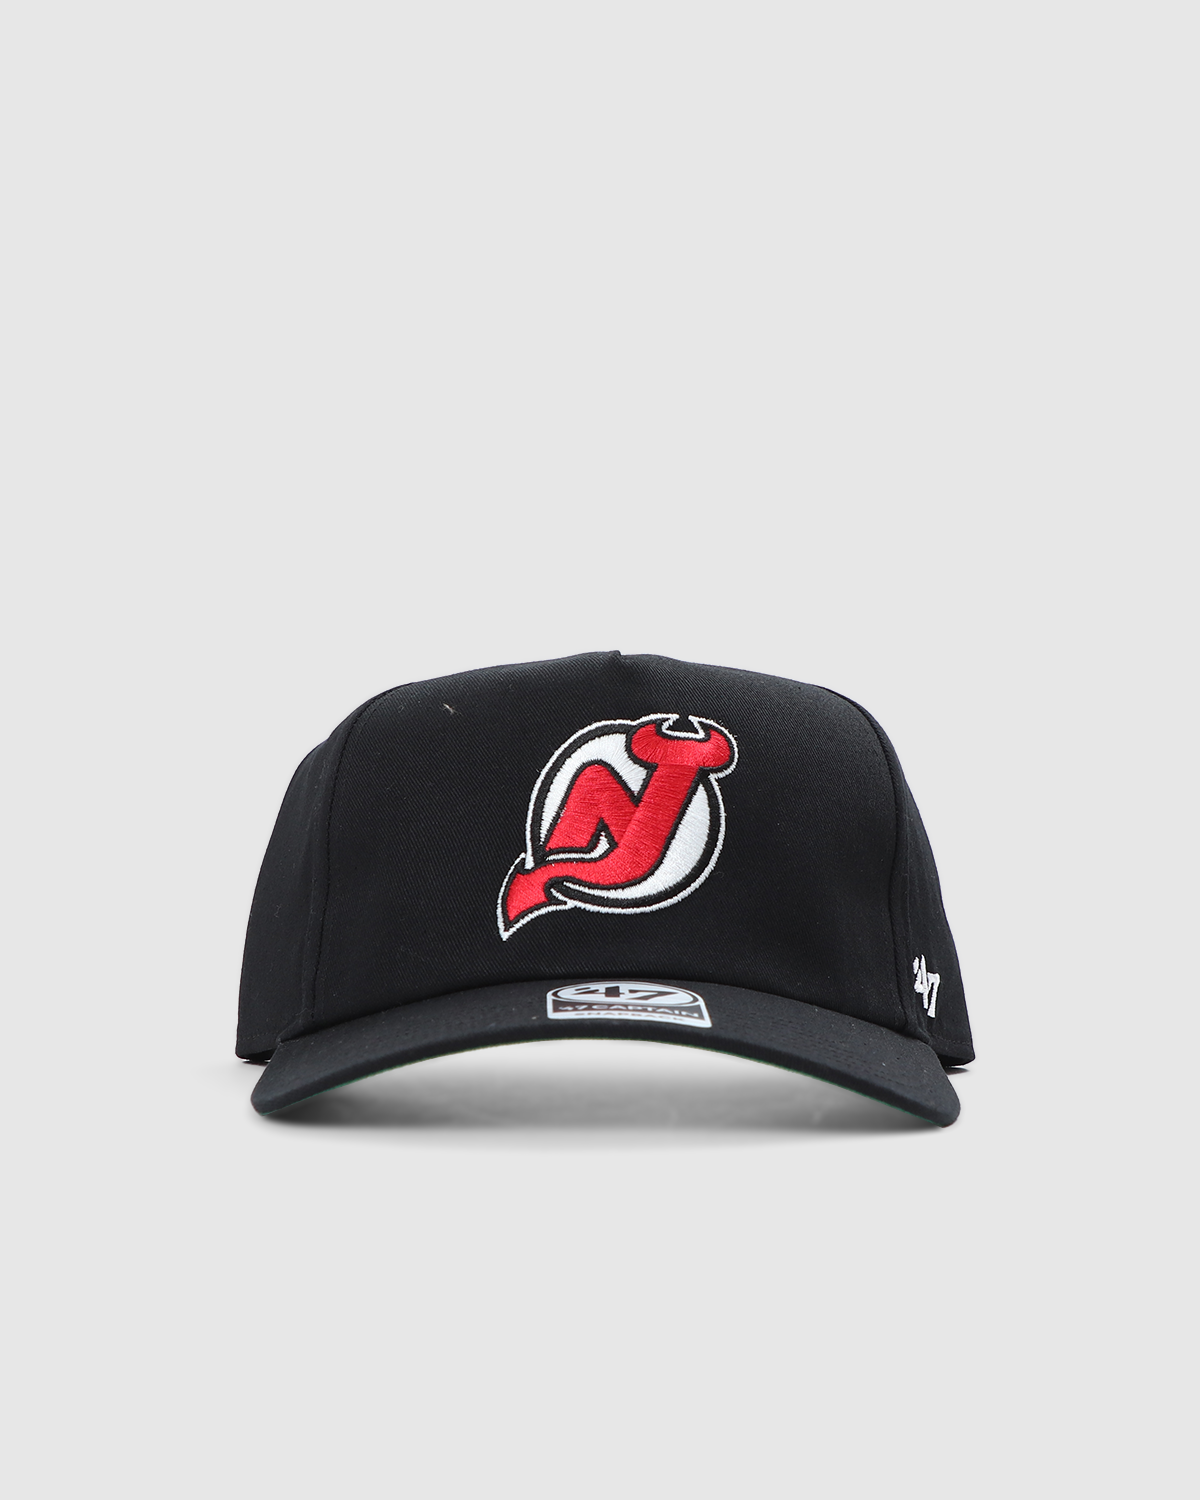 New Jersey Devils '47 Script Jersey MVP Trucker Snapback Hat